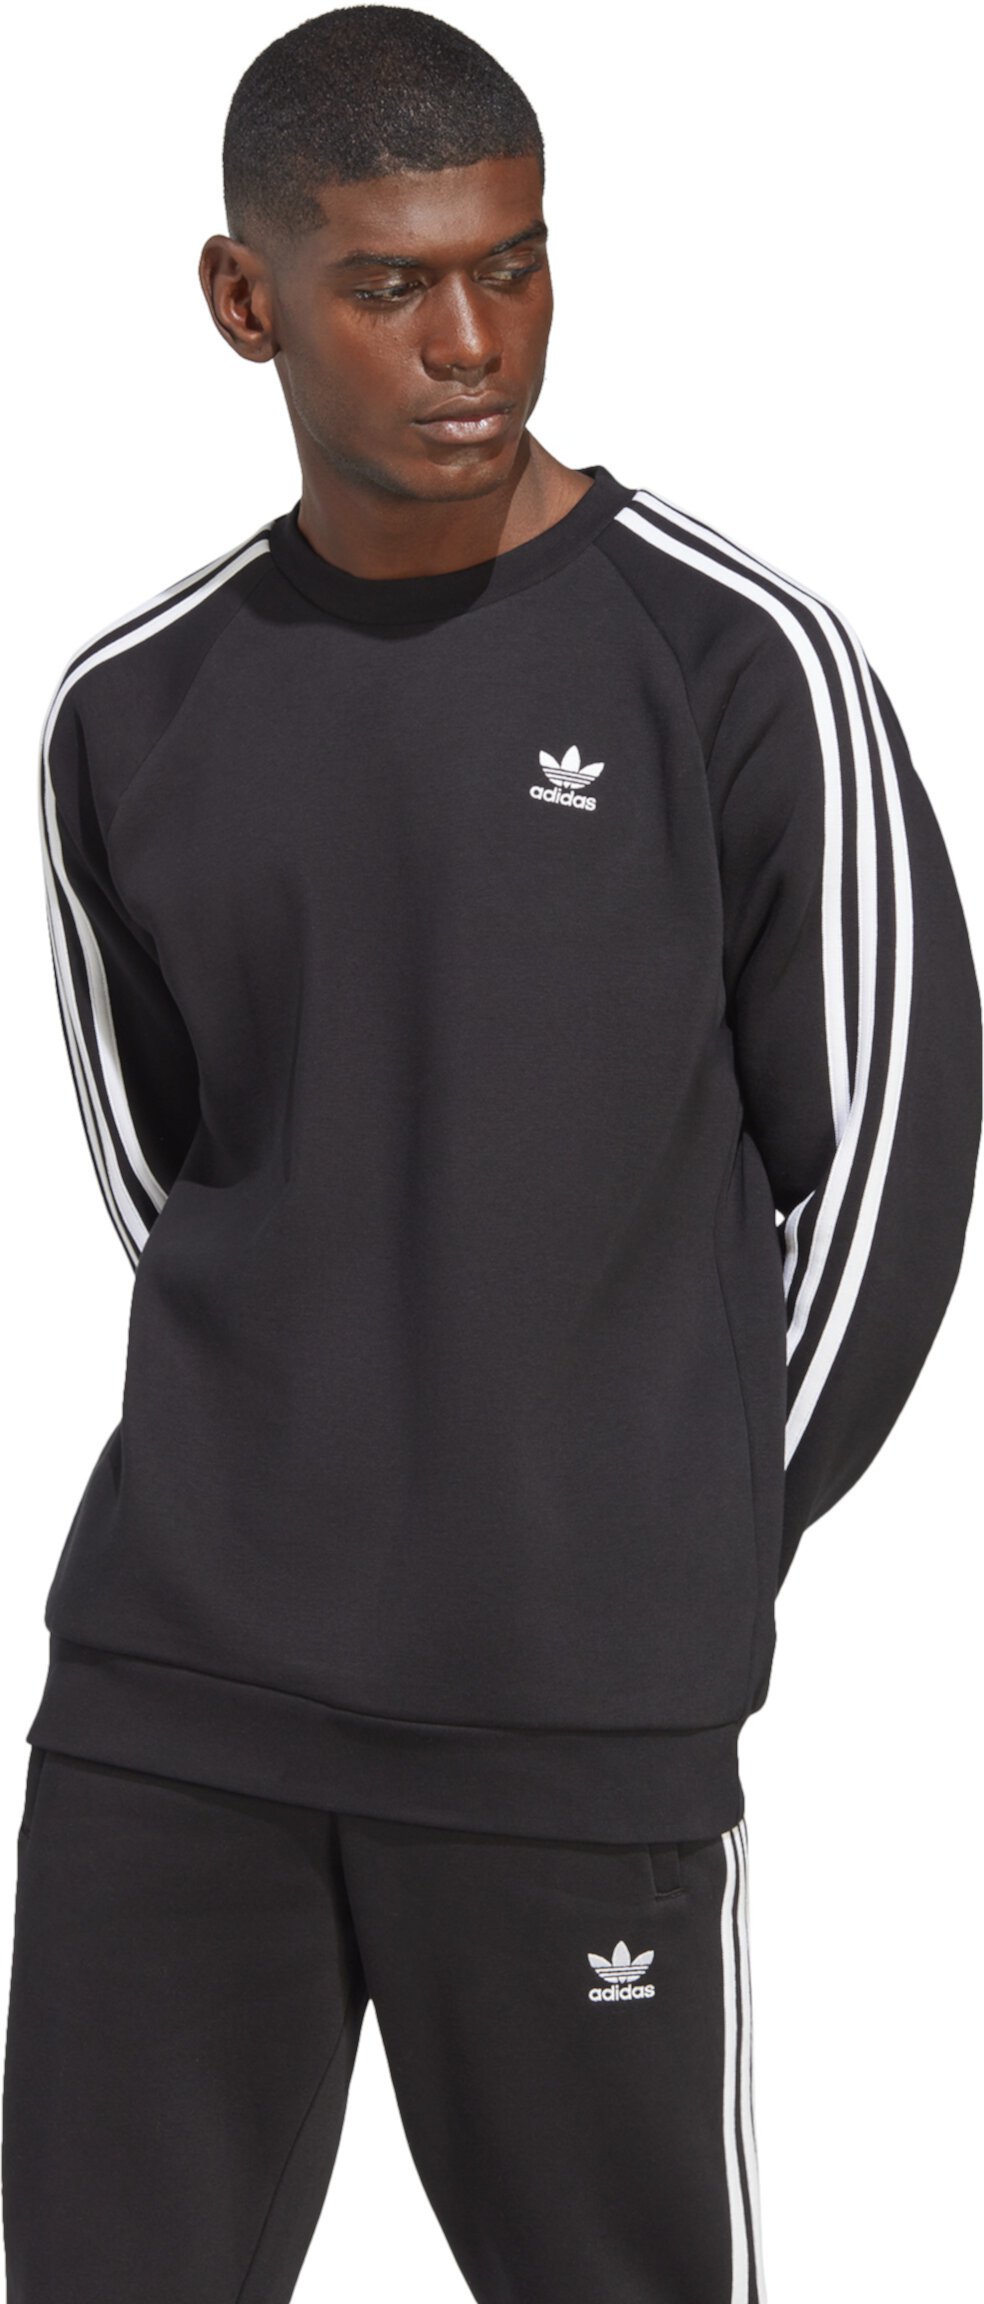 Мужской свитер с эмблемой 3-Полоски Adidas Adidas